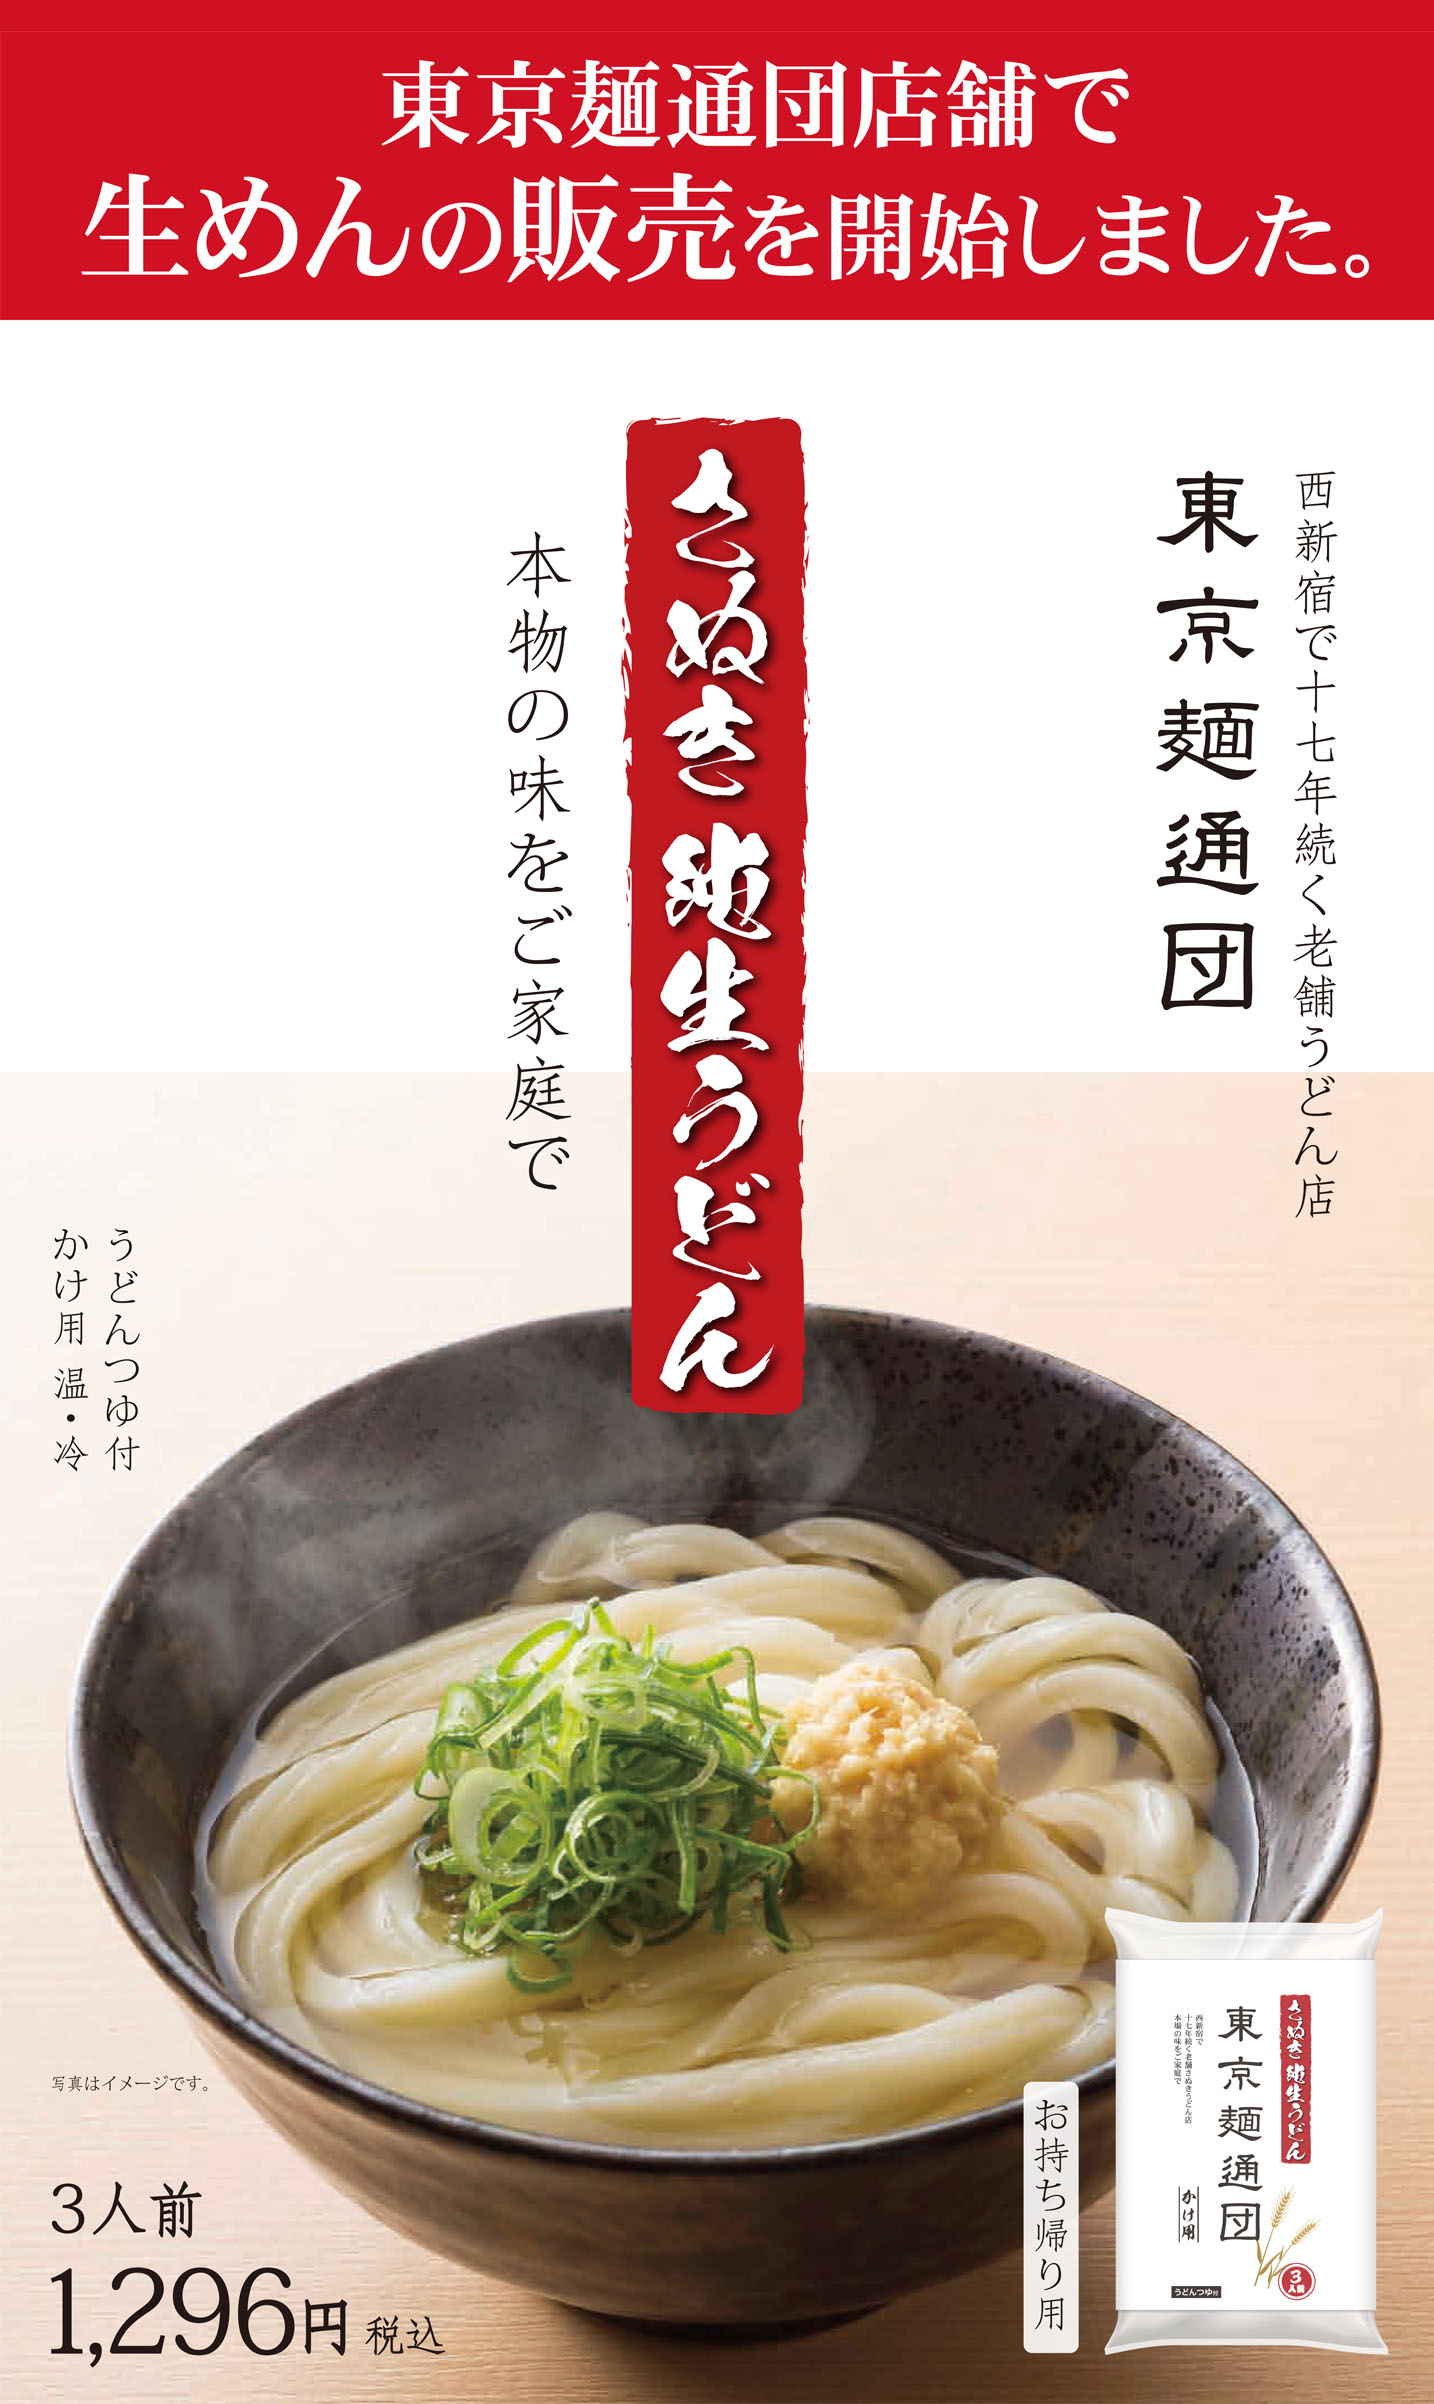 麺通団公式ウェブサイト 東京麺通団